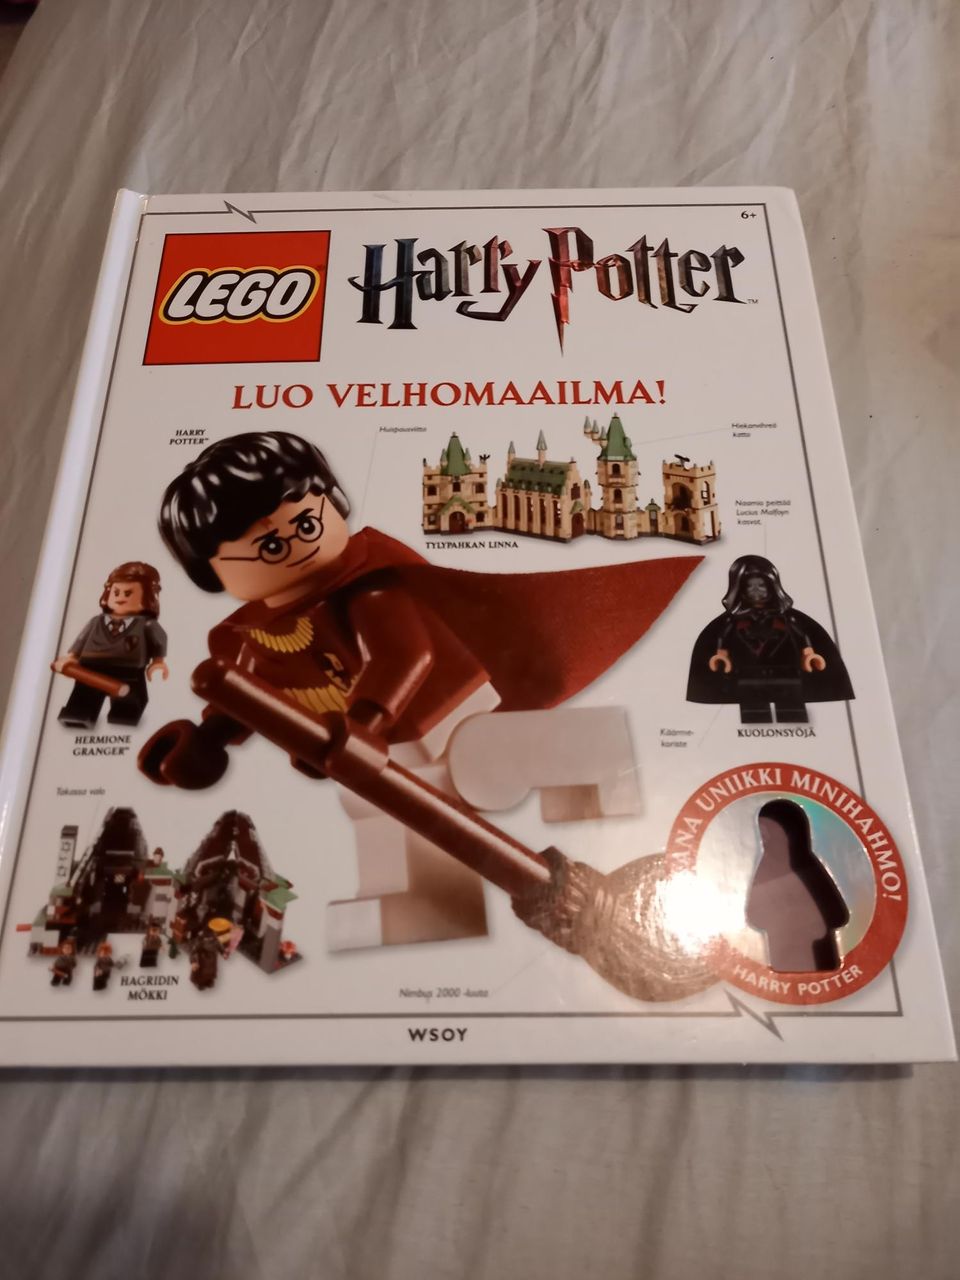 Lego Harry Potter Luo velhomaailma